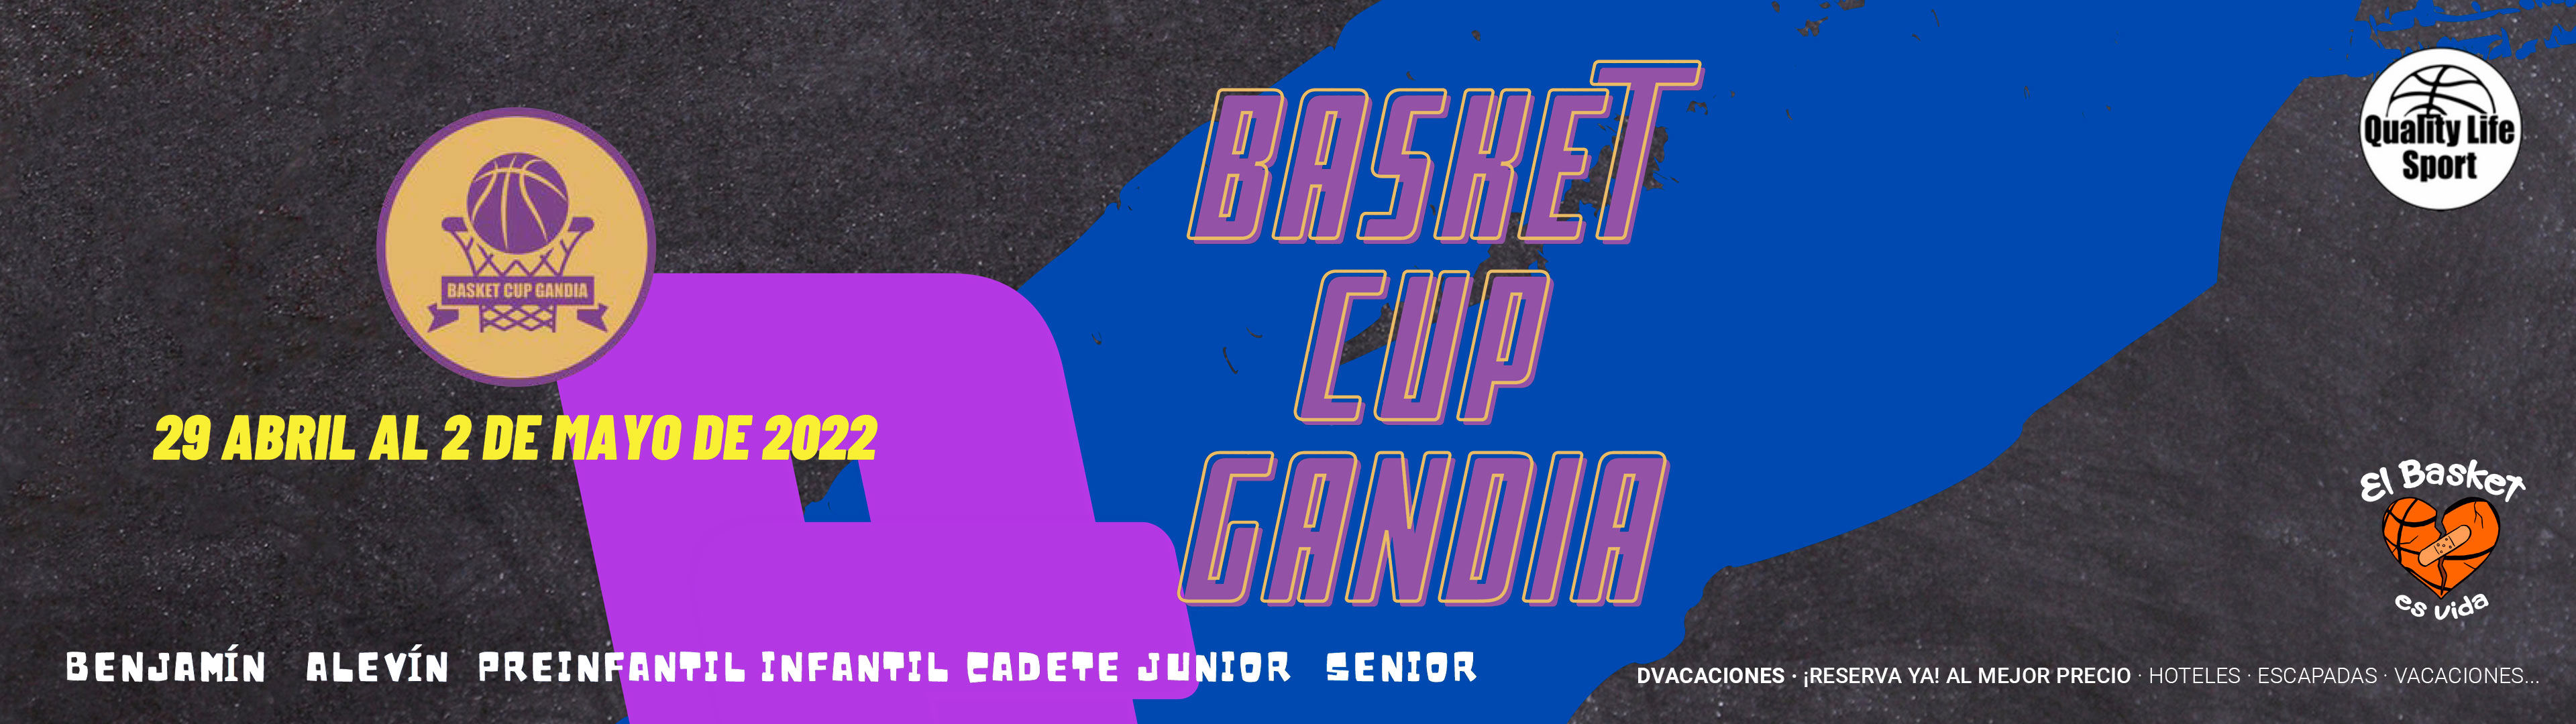 BASKET CUP GANDIA - BASKET CUP GANDIA - 29 DE ABRIL AL 2 DE  MAYO DE 2022